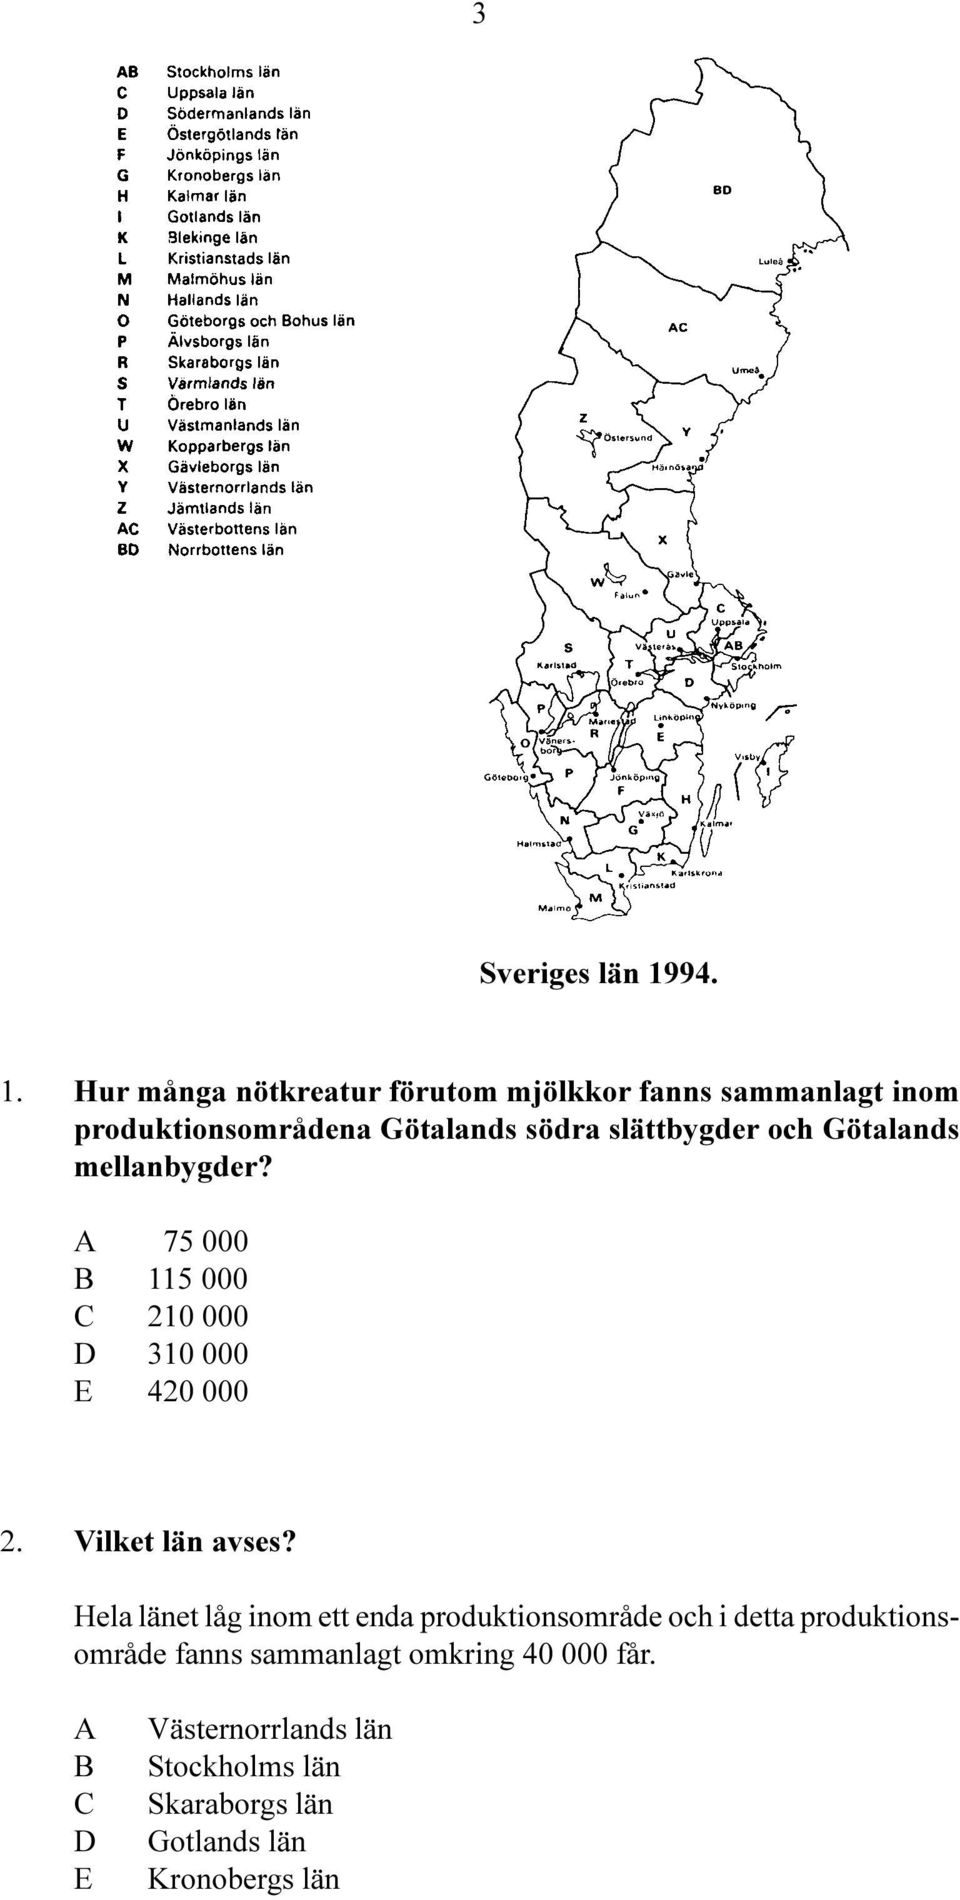 Hur många nötkreatur förutom mjölkkor fanns sammanlagt inom produktionsområdena Götalands södra